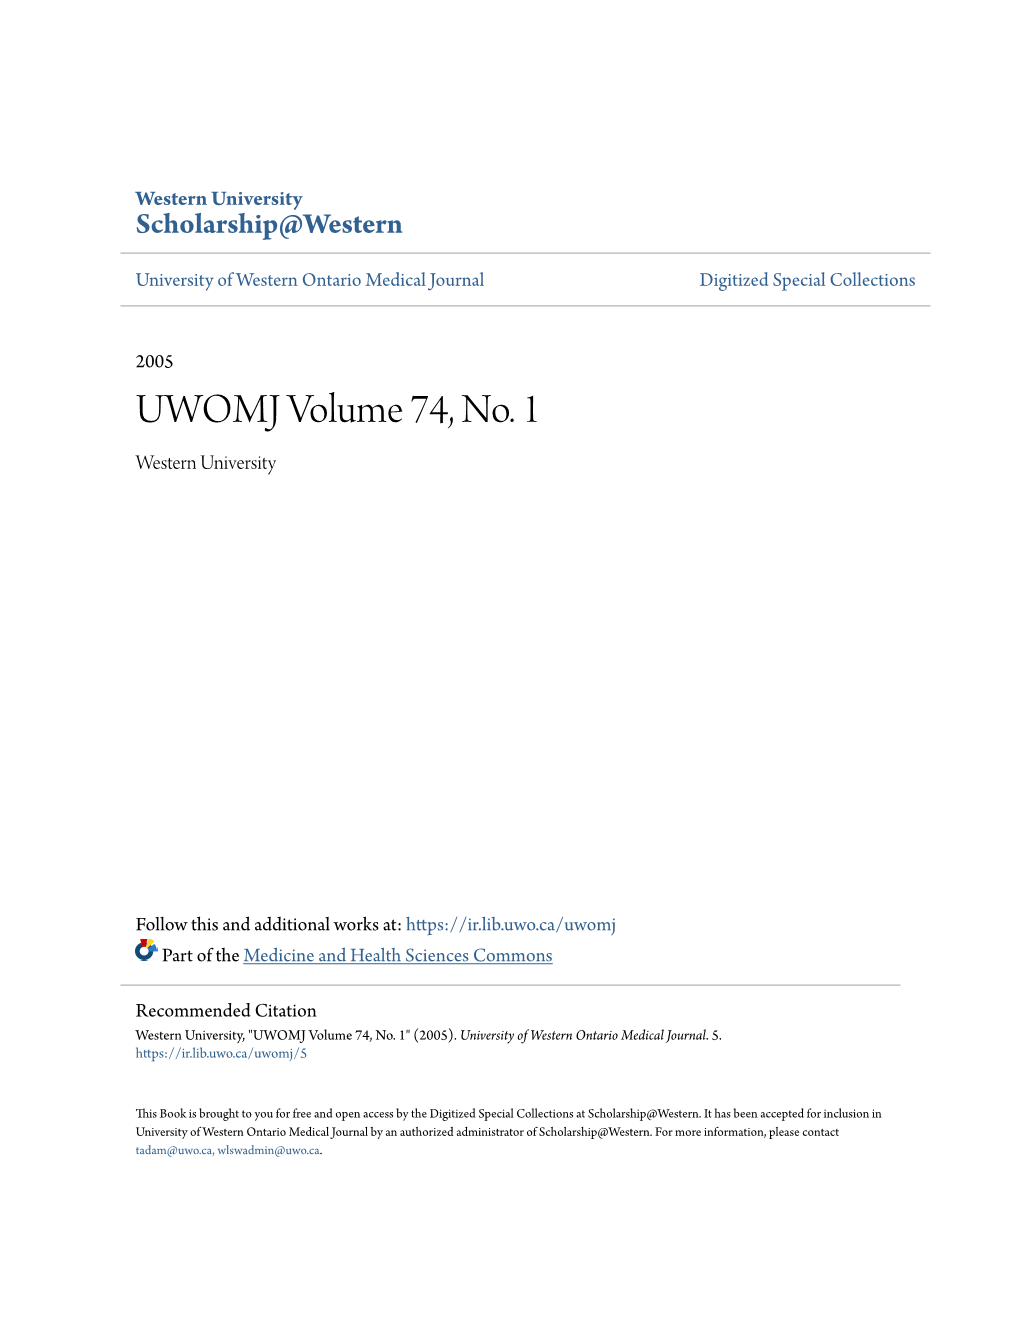 UWOMJ Volume 74, No. 1 Western University